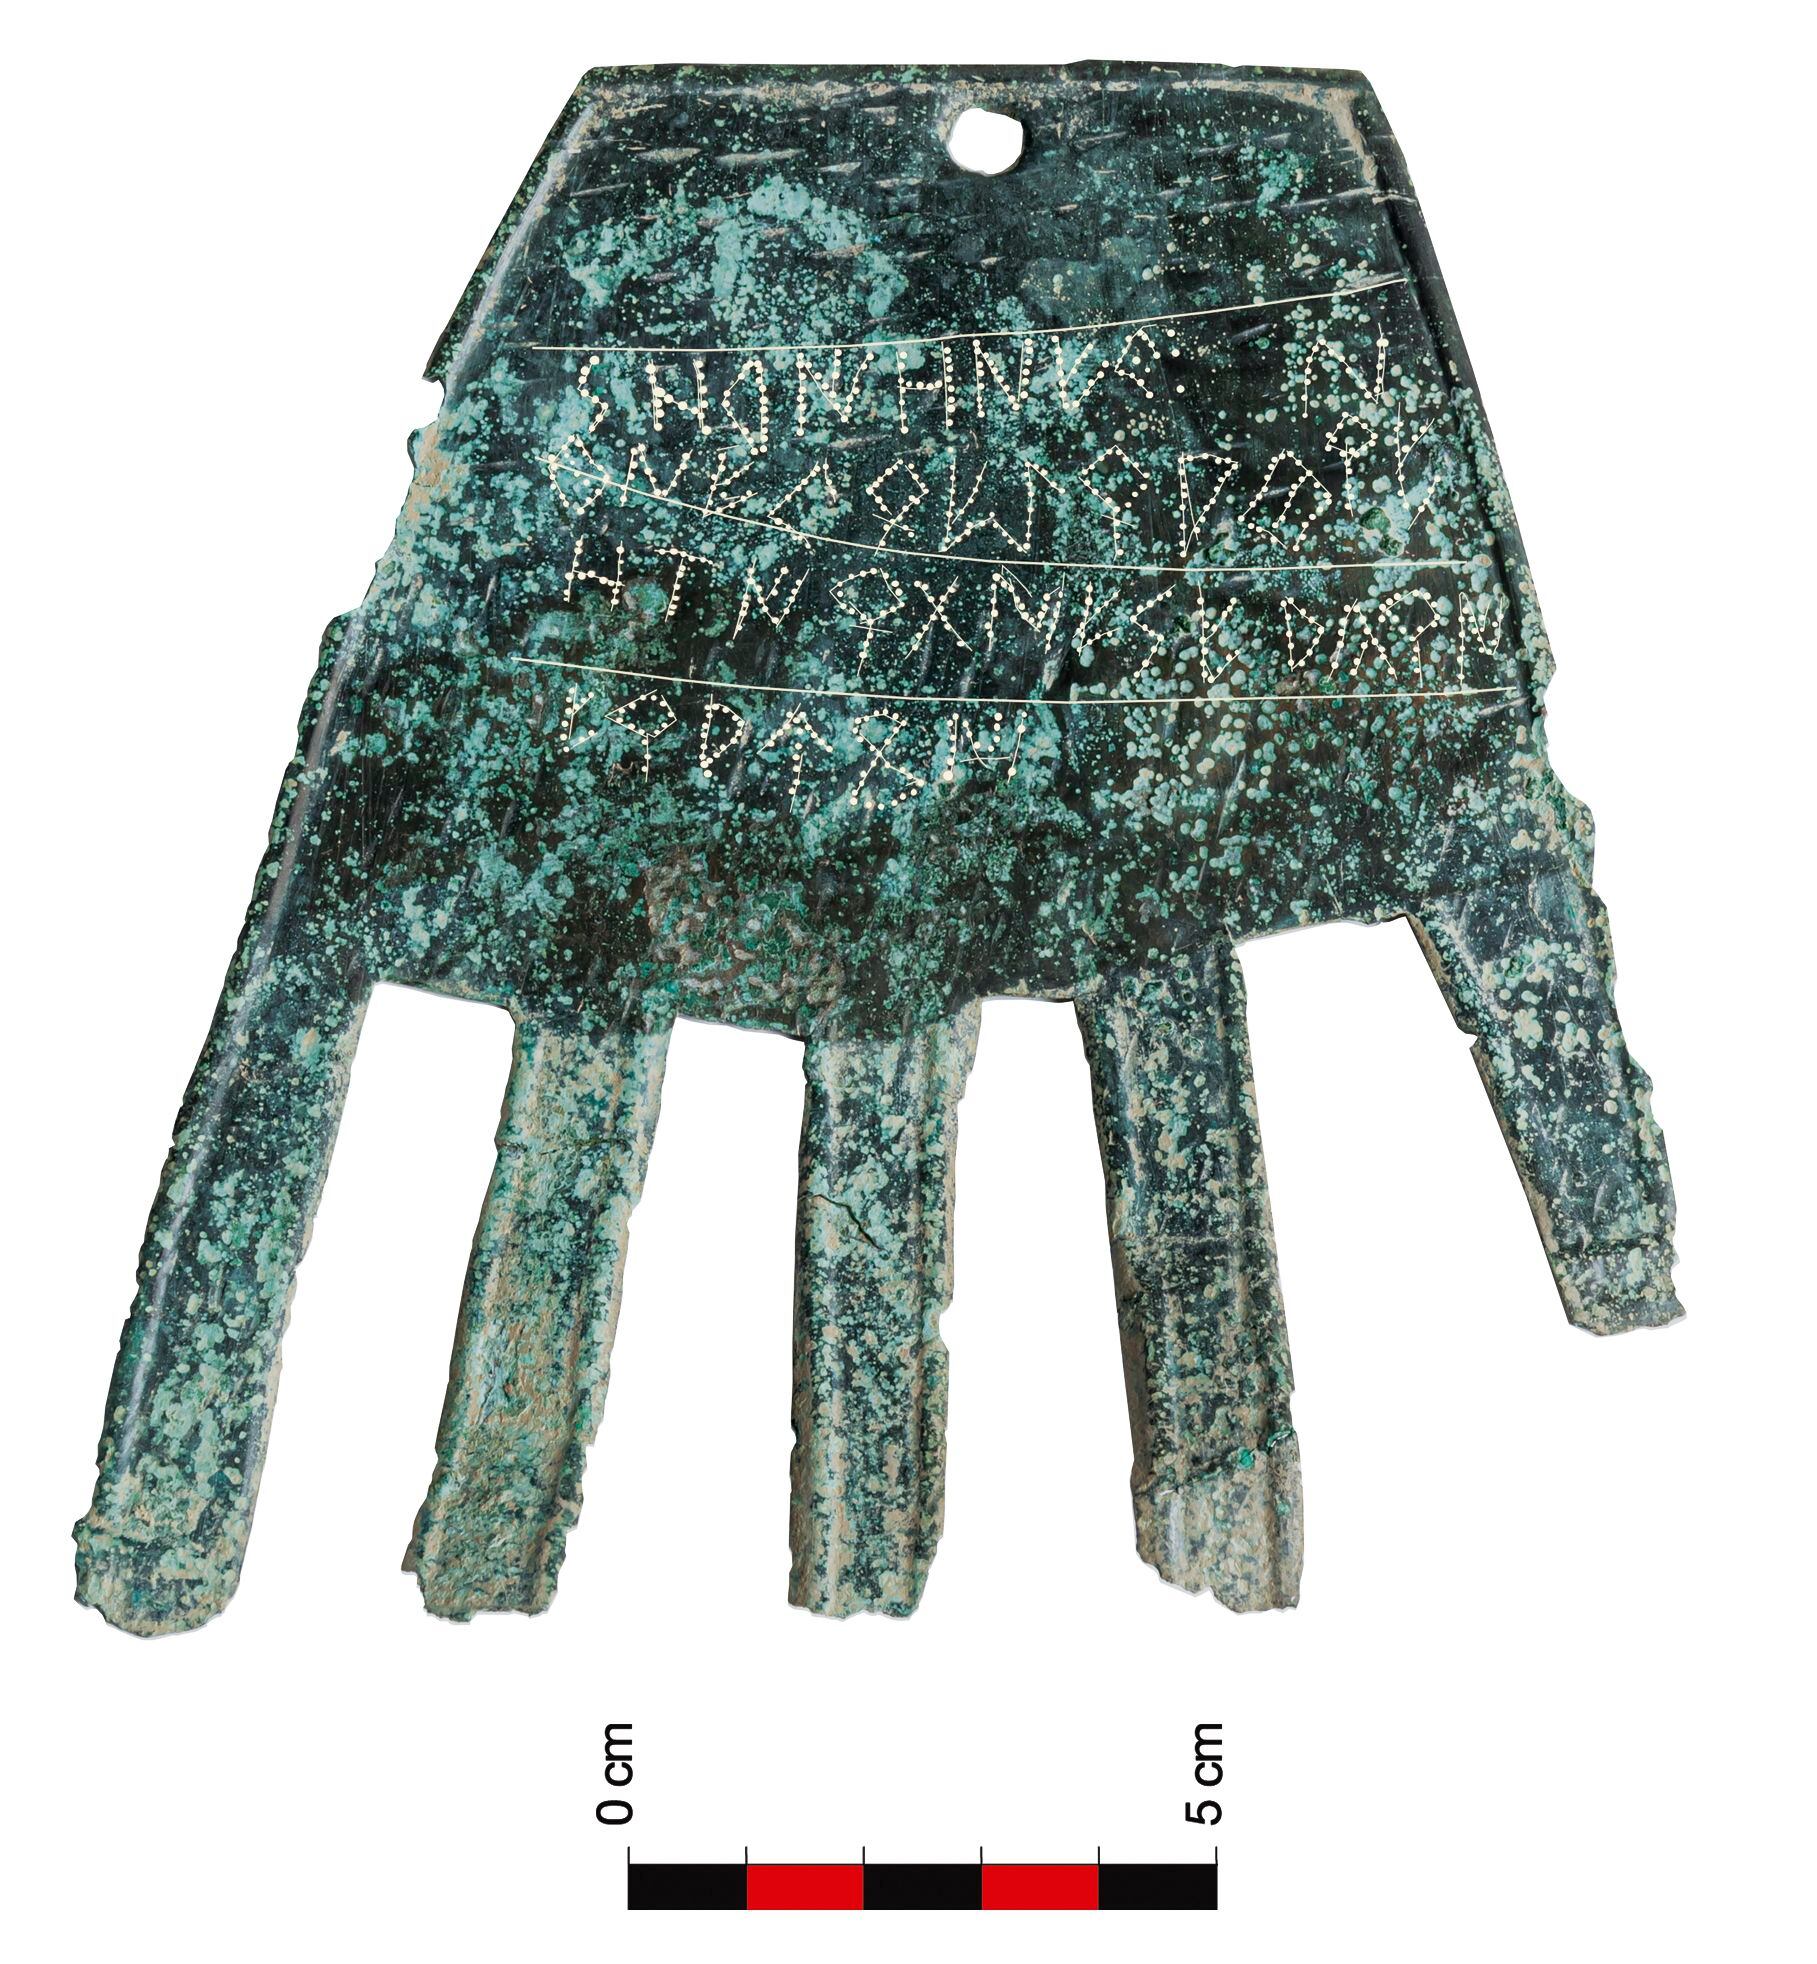 The Irulegui Hand and Proto-Basque inscriptions.  